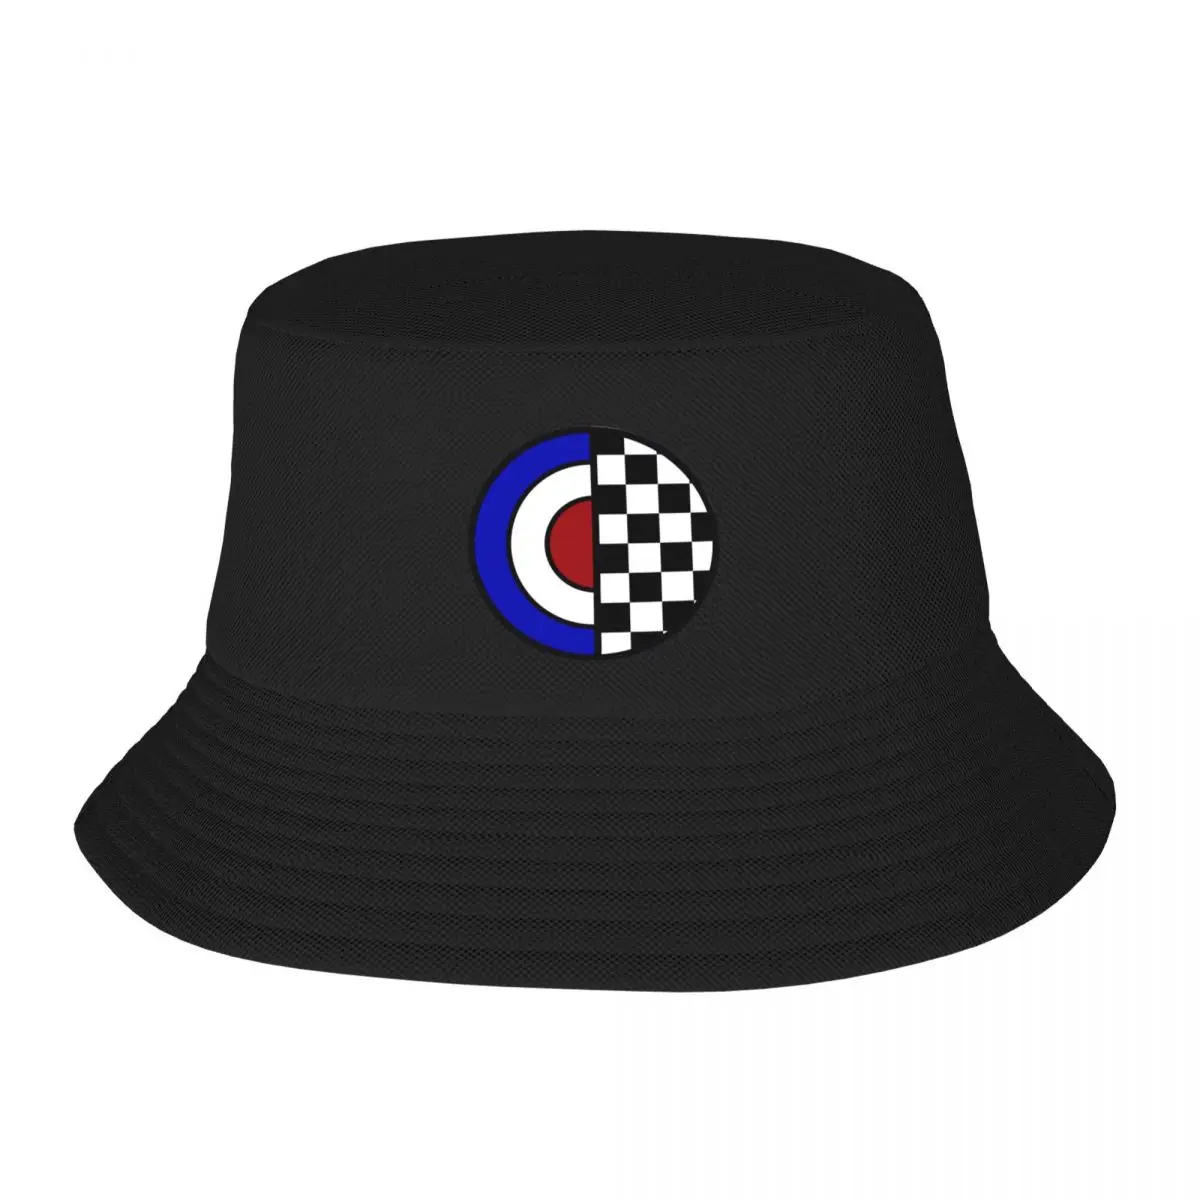 Новая мода /СКА, включающая в себя широкополую шляпу, уличную одежду, солнцезащитную шляпу для детей, шляпы boonie, пляжную женскую одежду для гольфа, мужскую